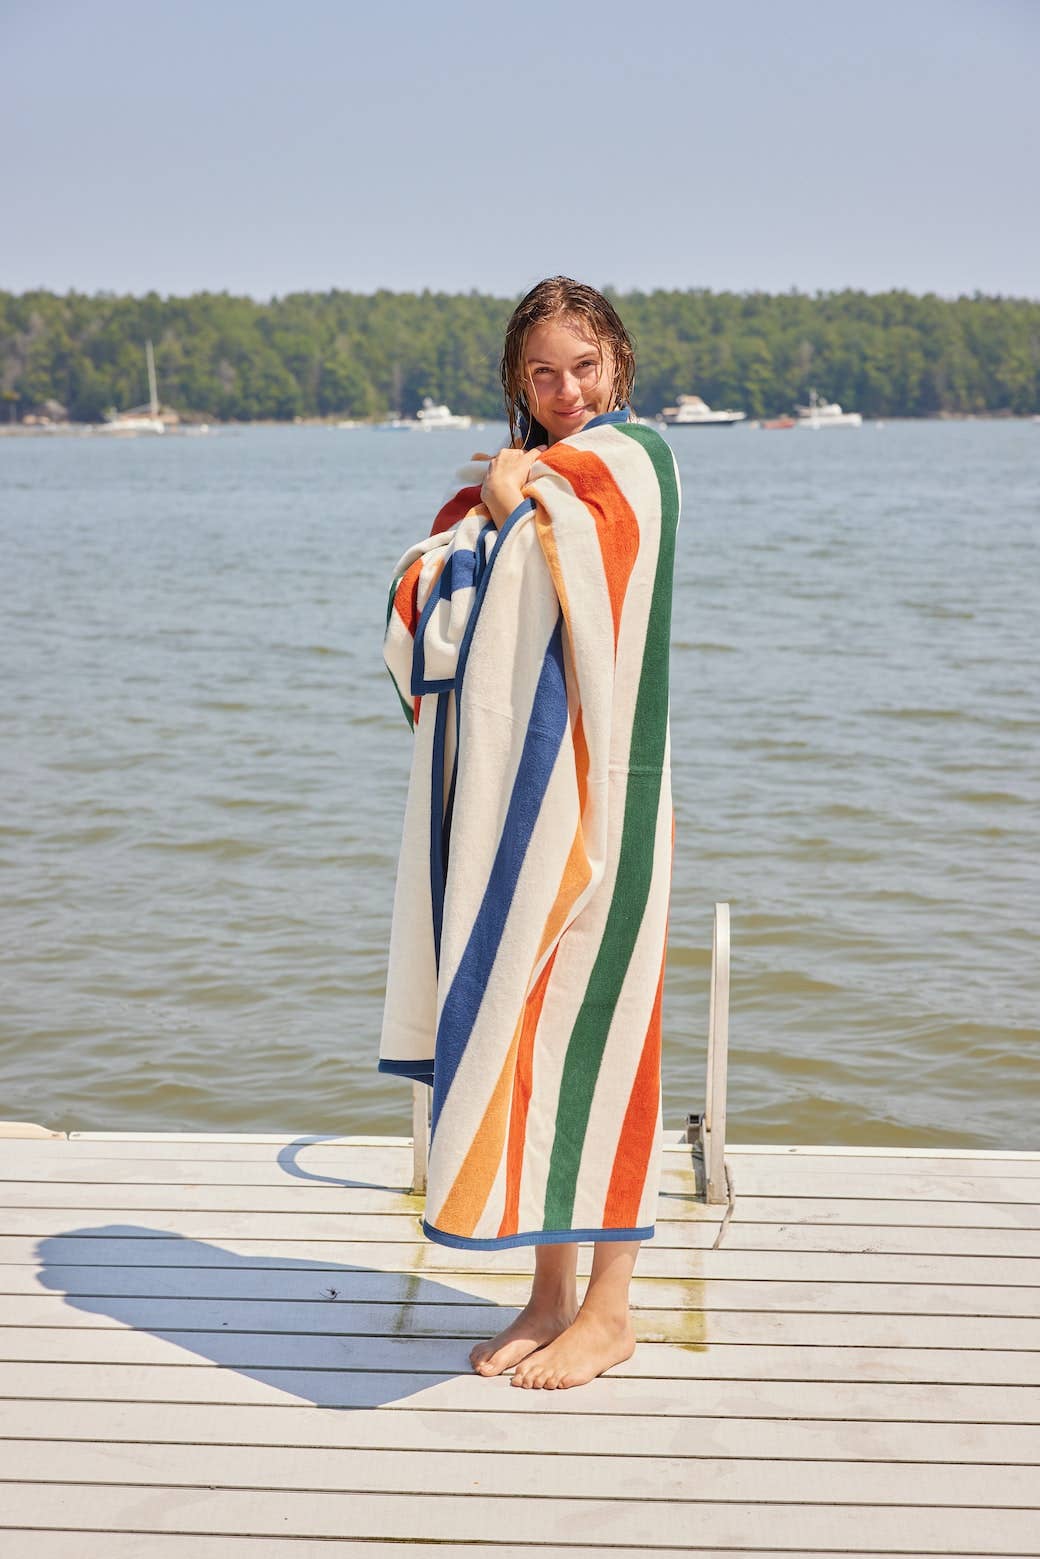 Vintage Casco Bay Stripe Blanket